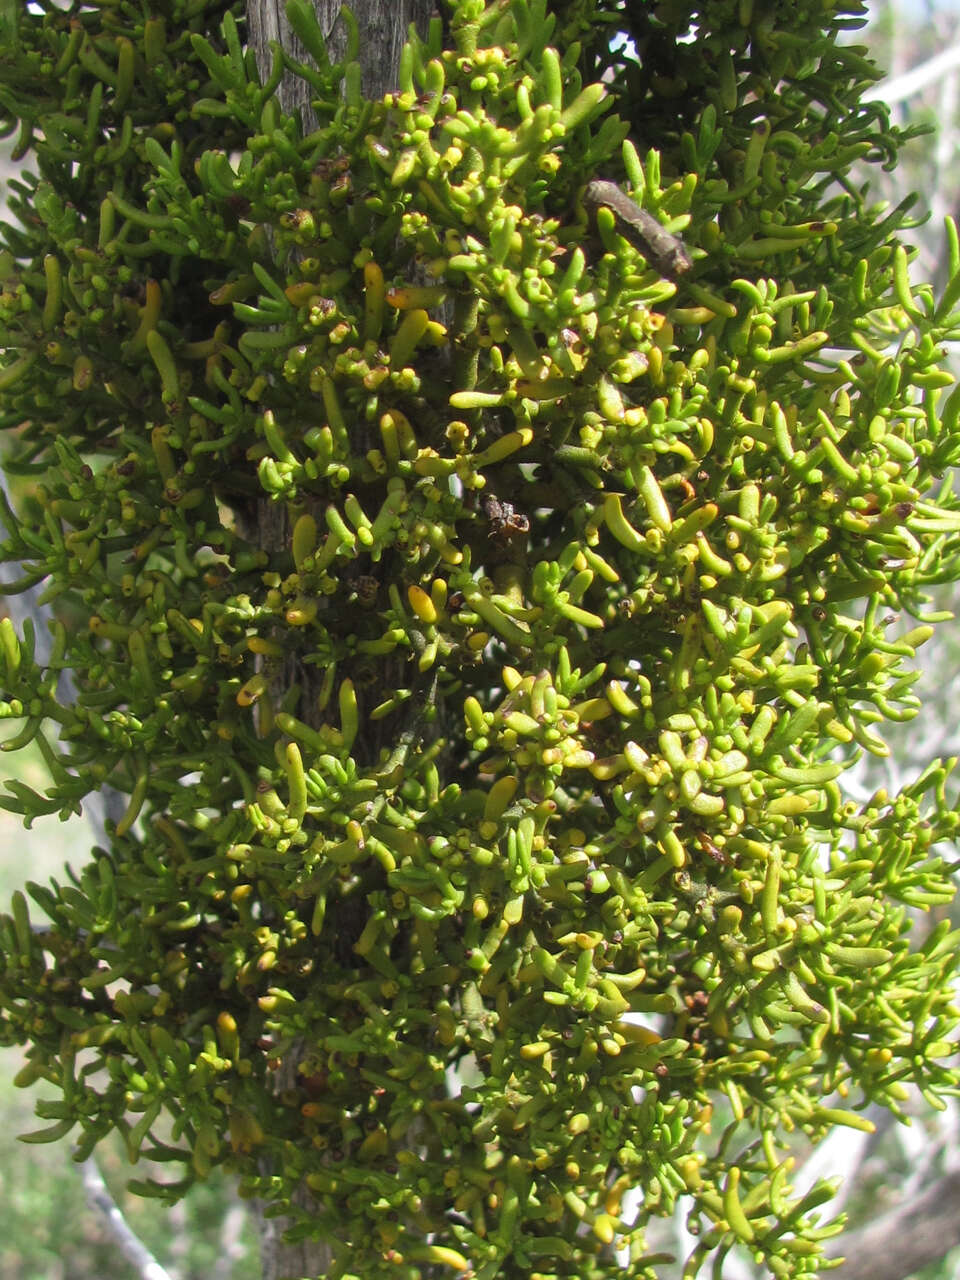 Image of Hawksworth's mistletoe